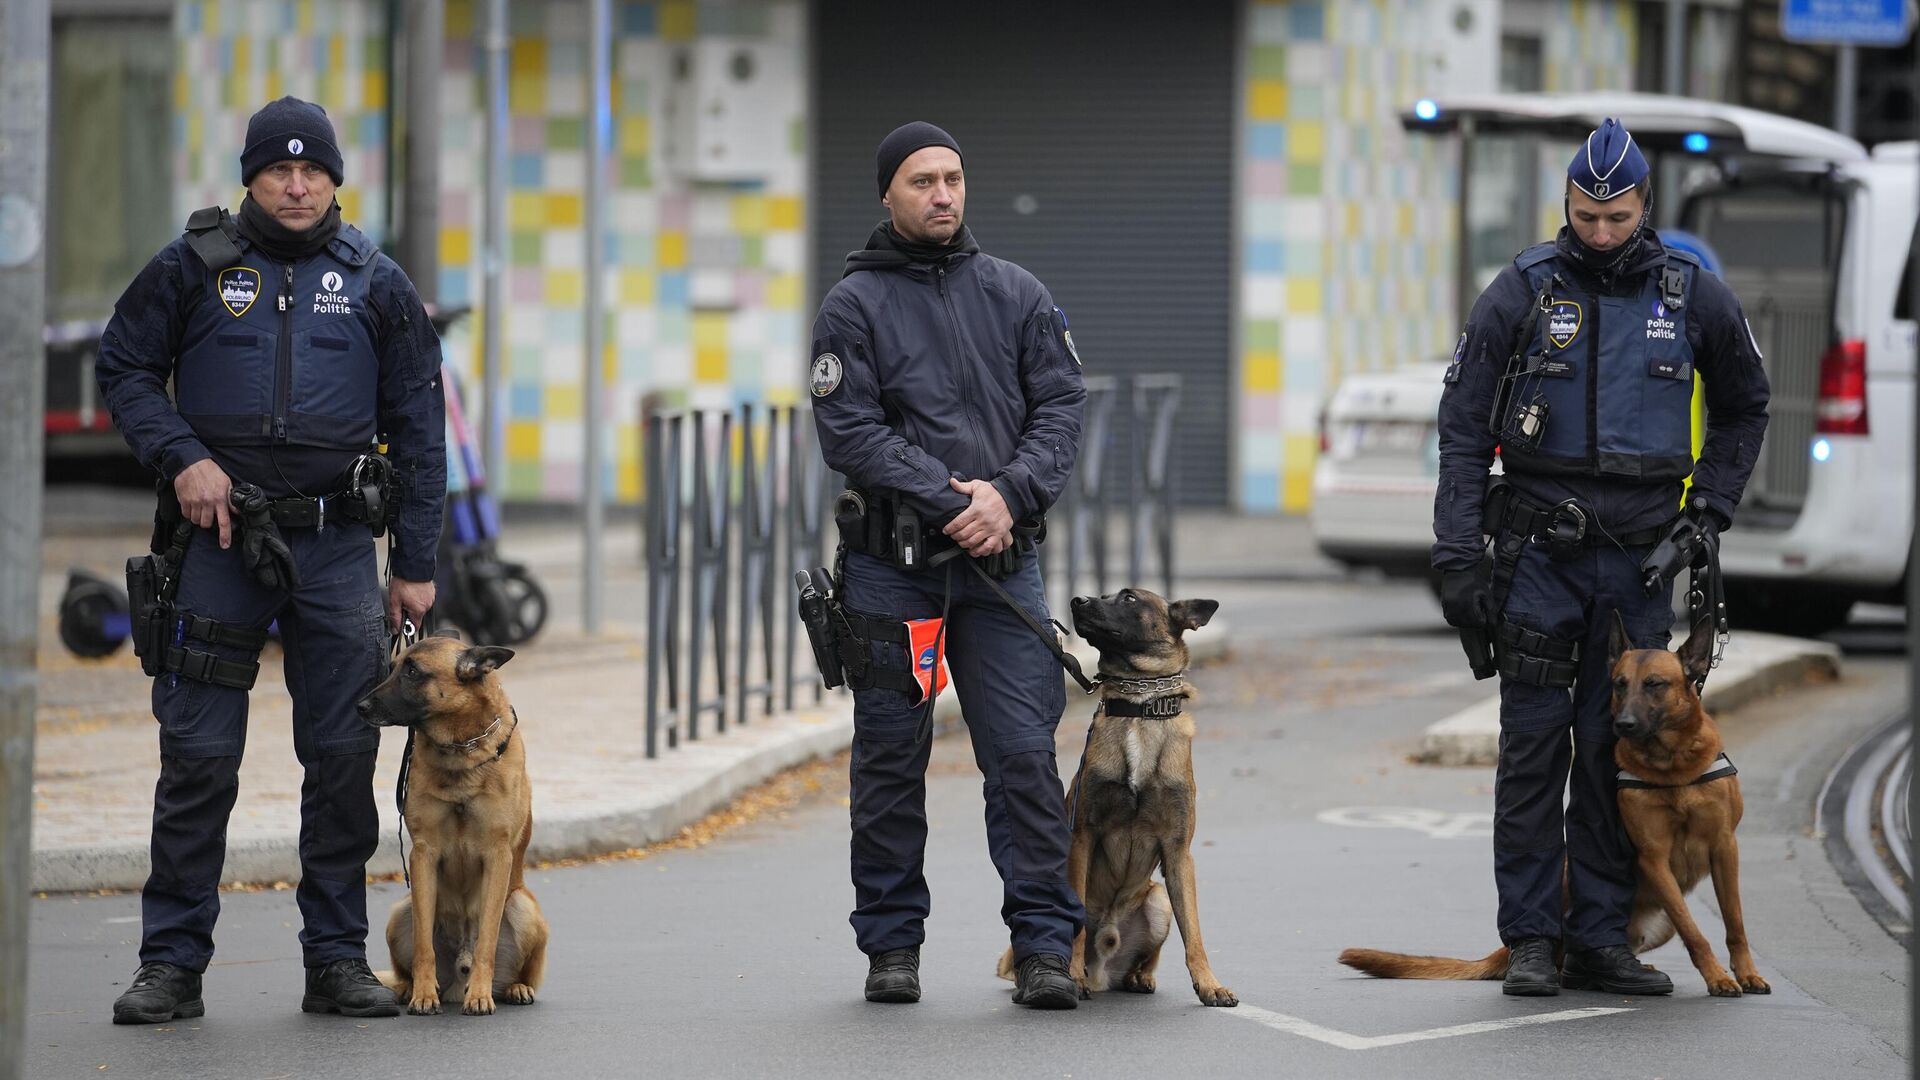 Трое чеченцев заключены под стражу в Бельгии по подозрению в подготовке теракта